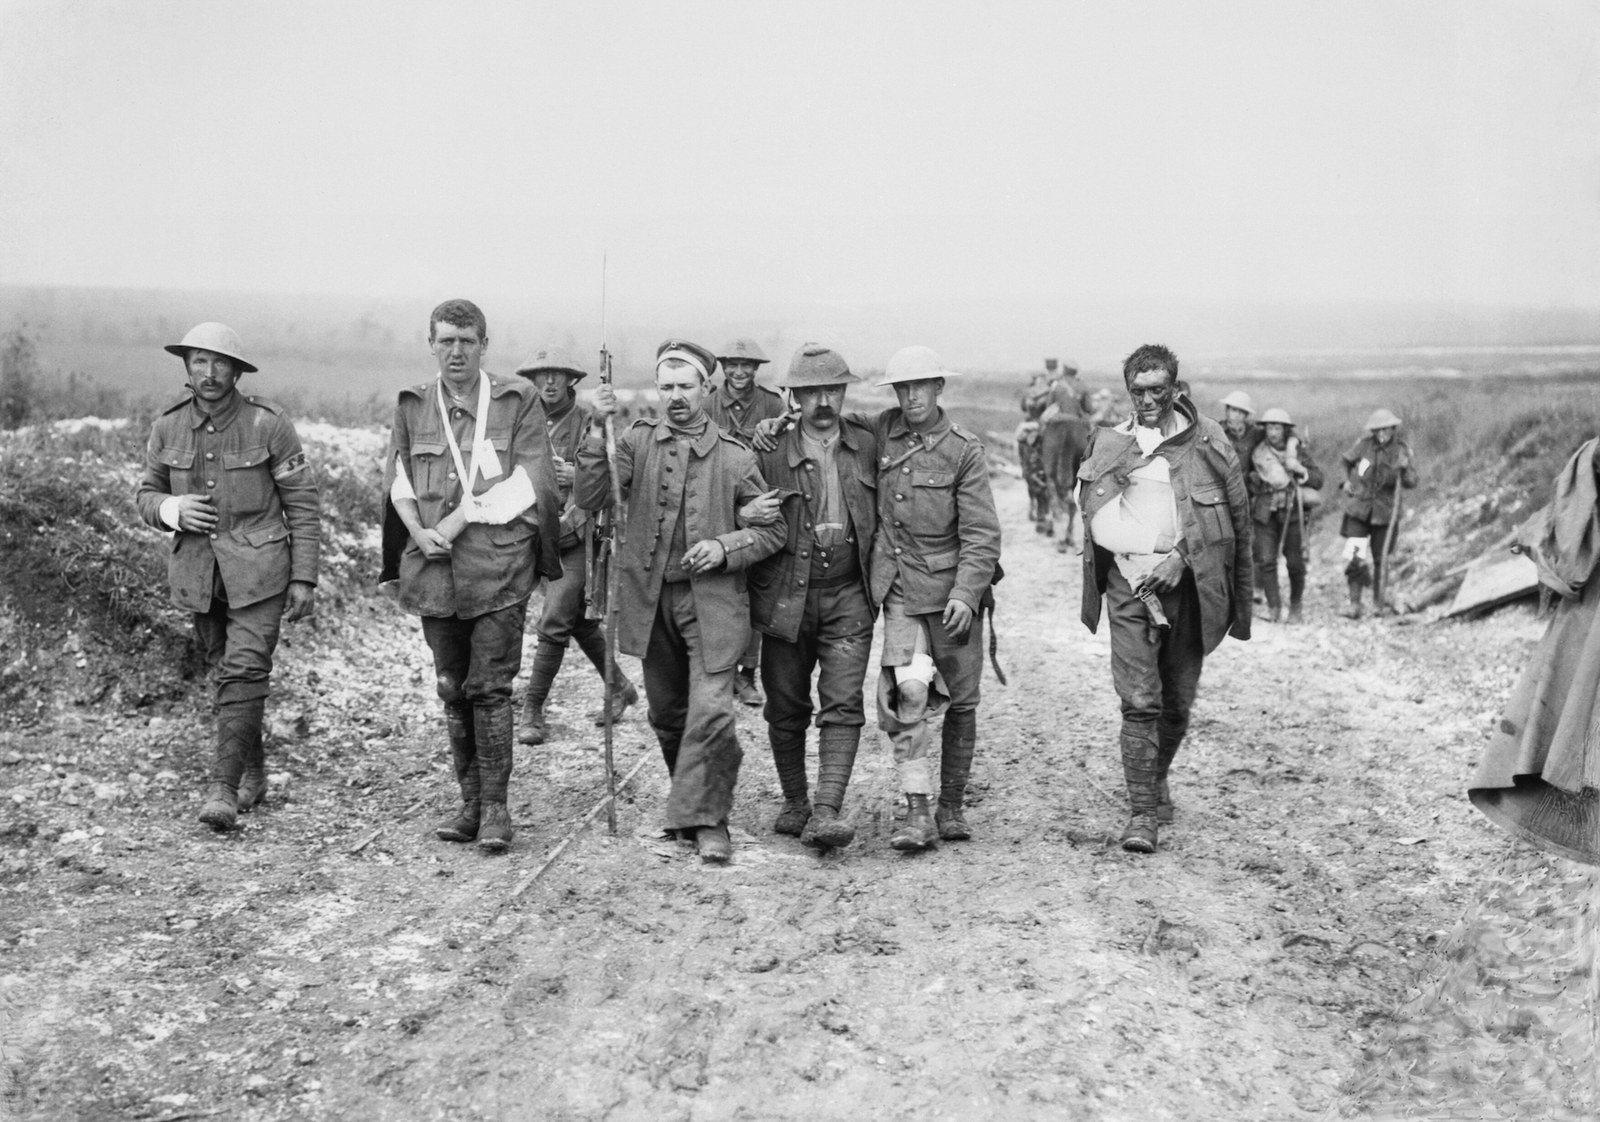 第一次世界大戦の終結から100年 写真でよみがえる 地獄のような戦場